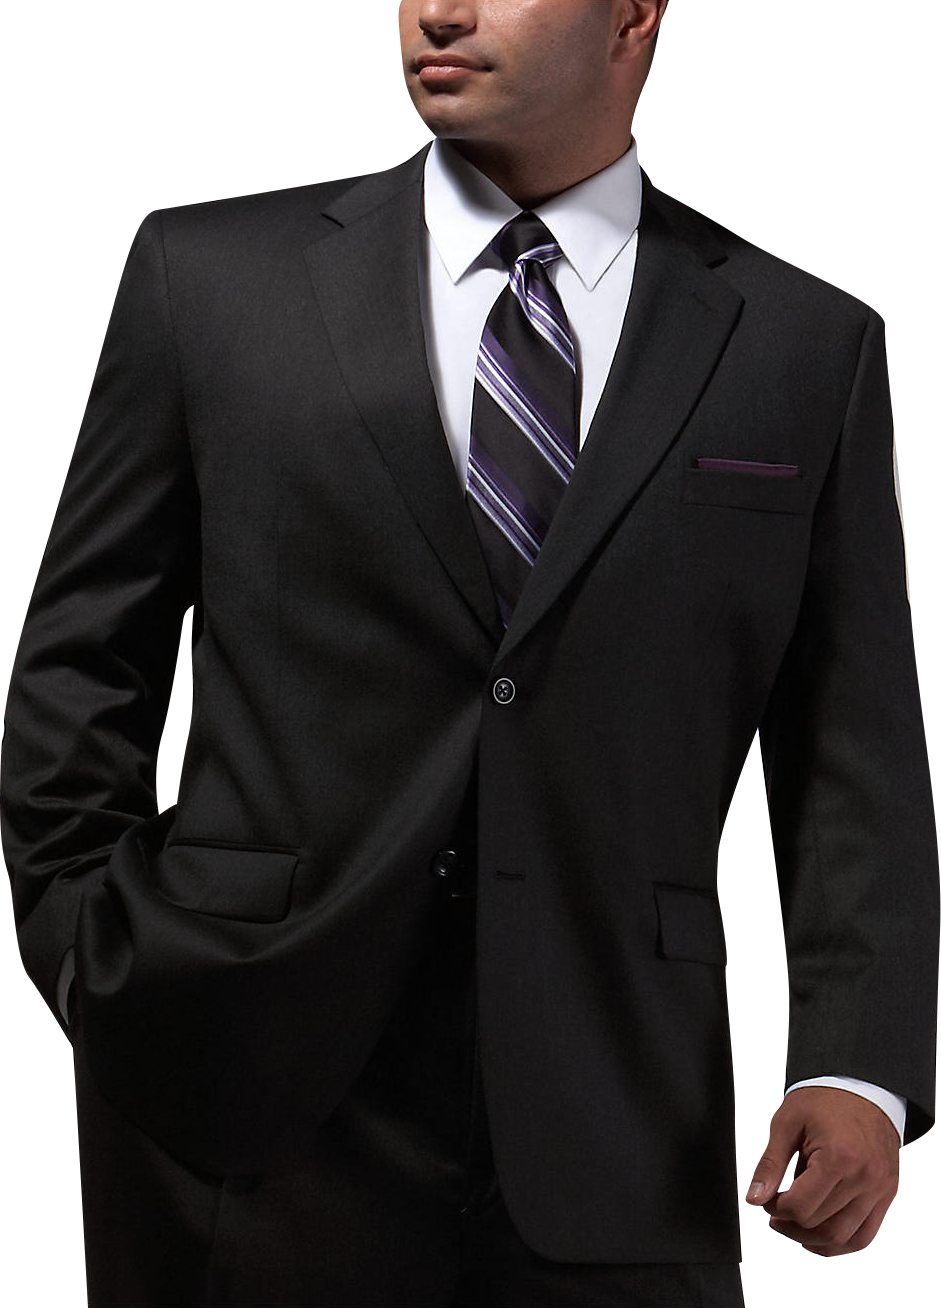 Joseph & Feiss Charcoal Executive Fit Suit - Men's Suits | Men's Wearhouse